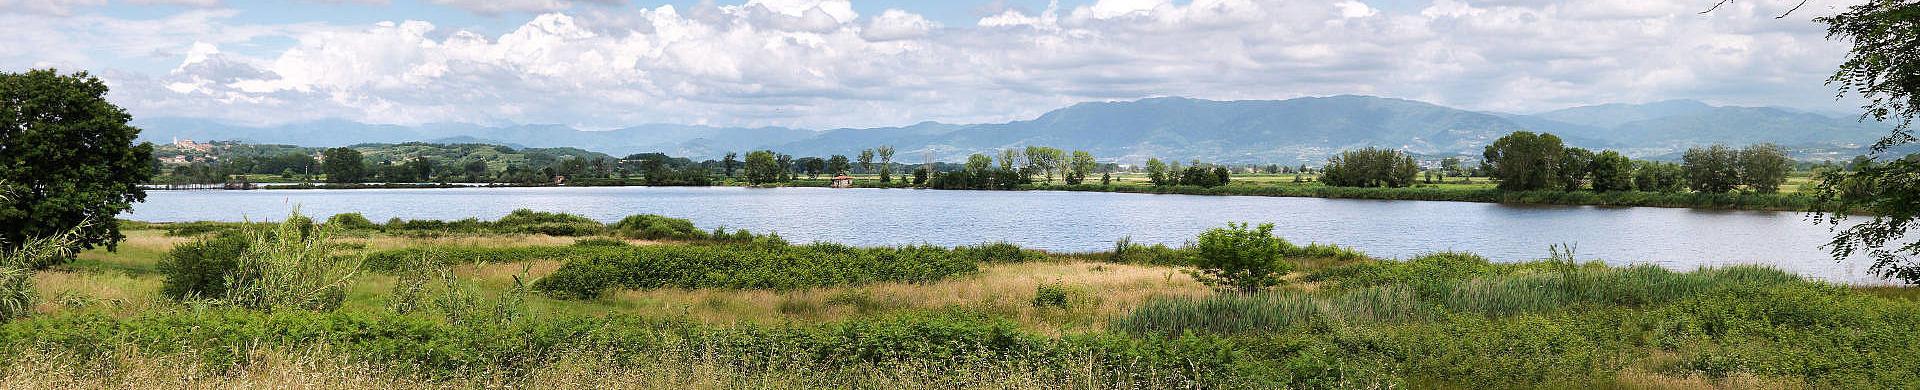 Lago della gherardesca